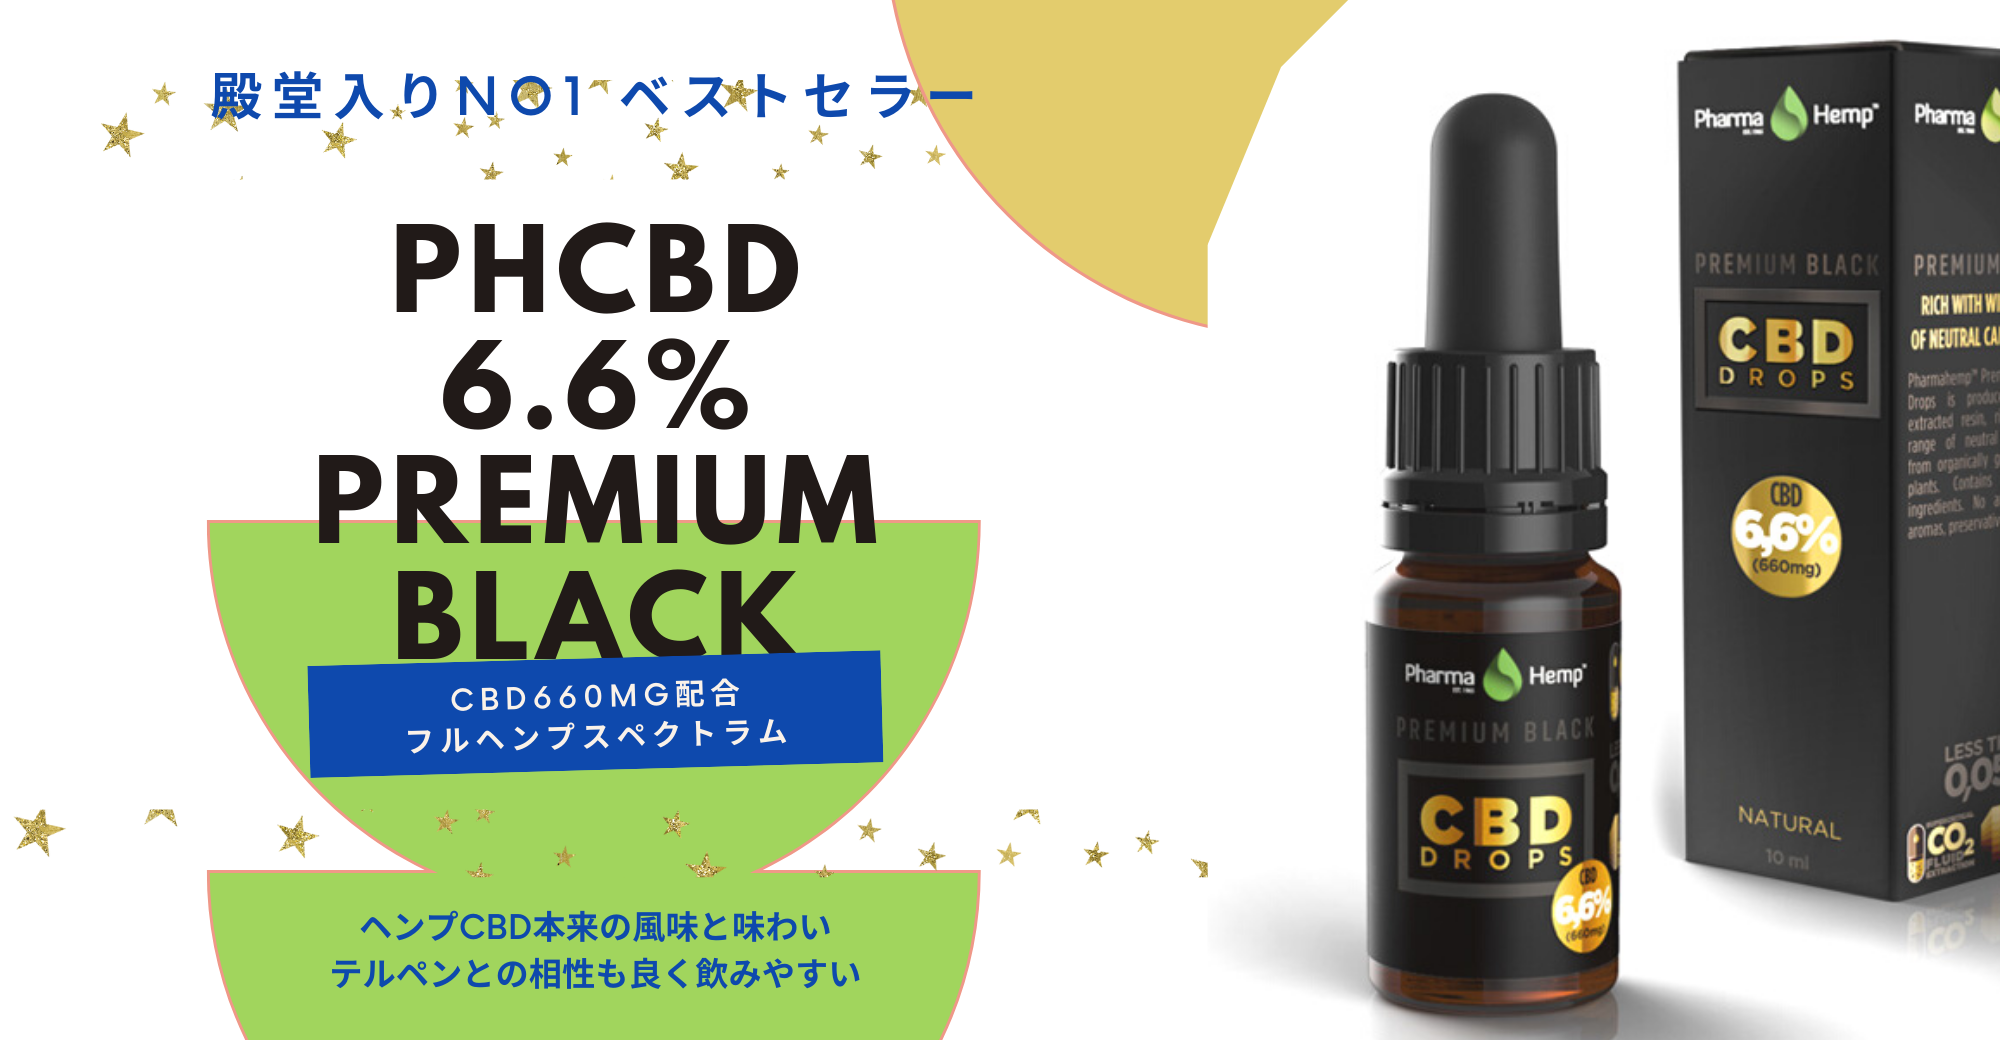 日本でも最近CBDの認知が上がっており、多くのご相談を受けます。CBD先進国のヨーロッパから直接仕入れて販売しております。 